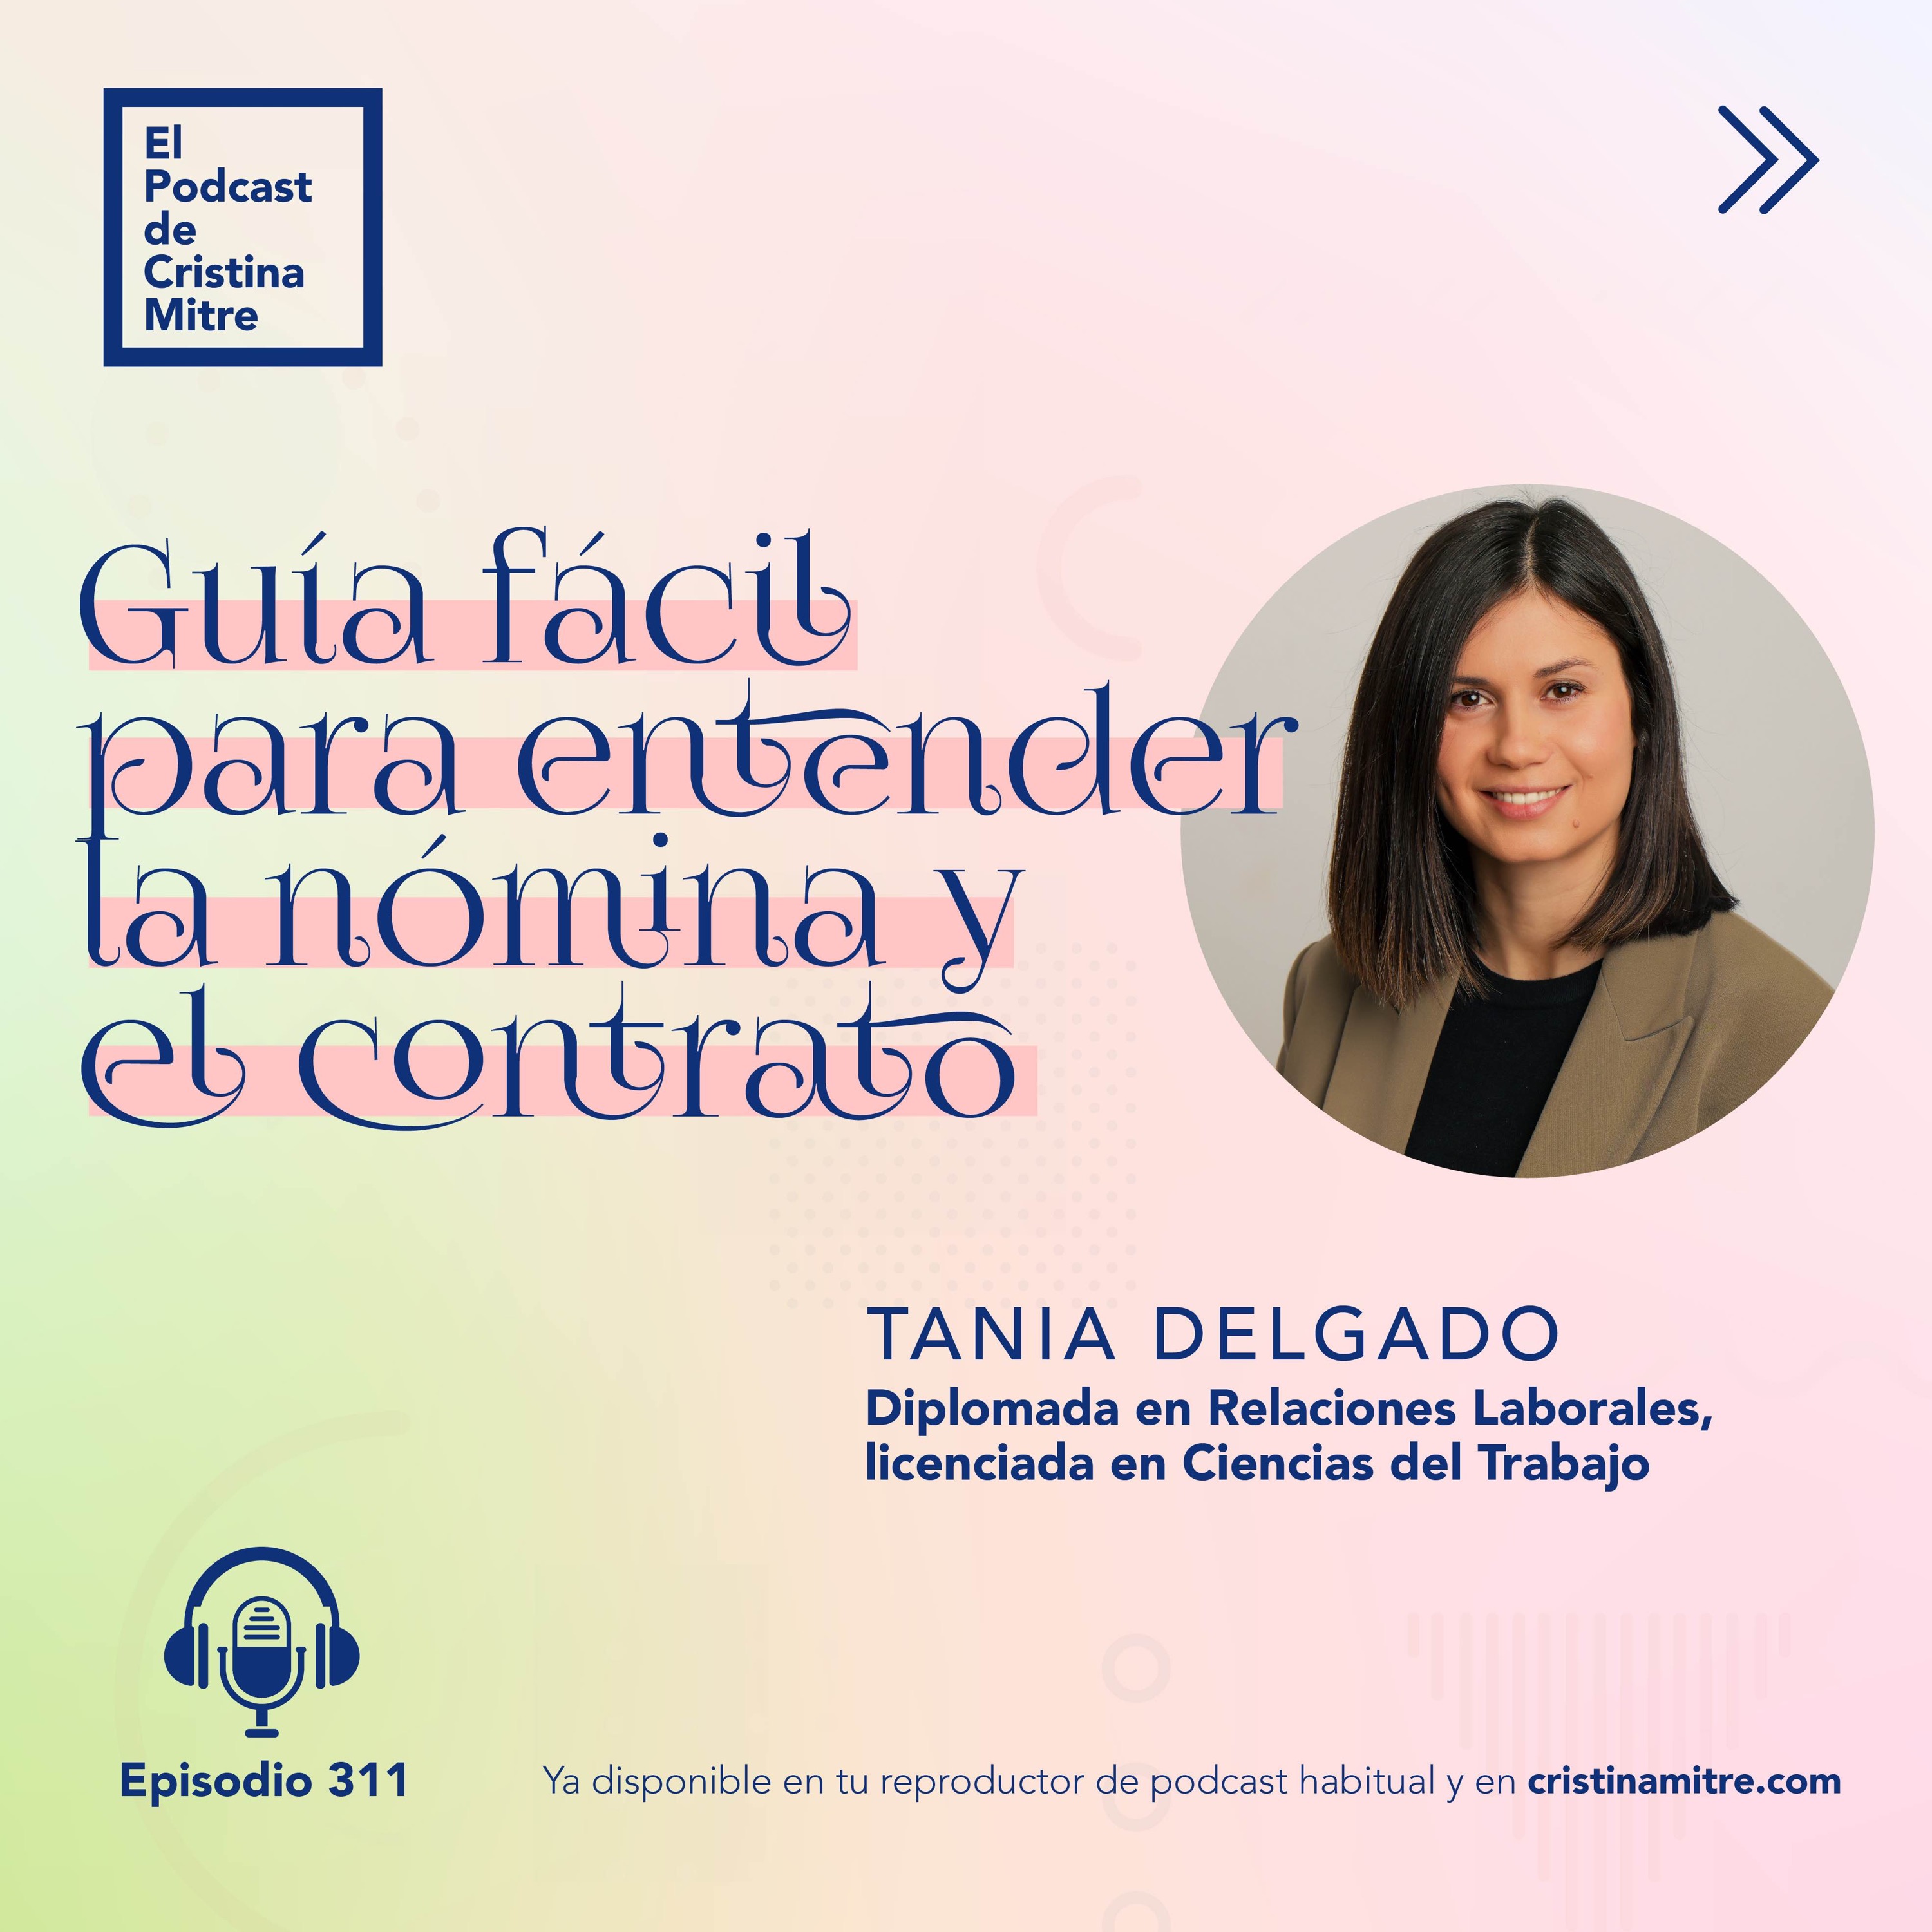 Guía fácil para entender la nómina y el contrato, con Tania Delgado. Episodio 311